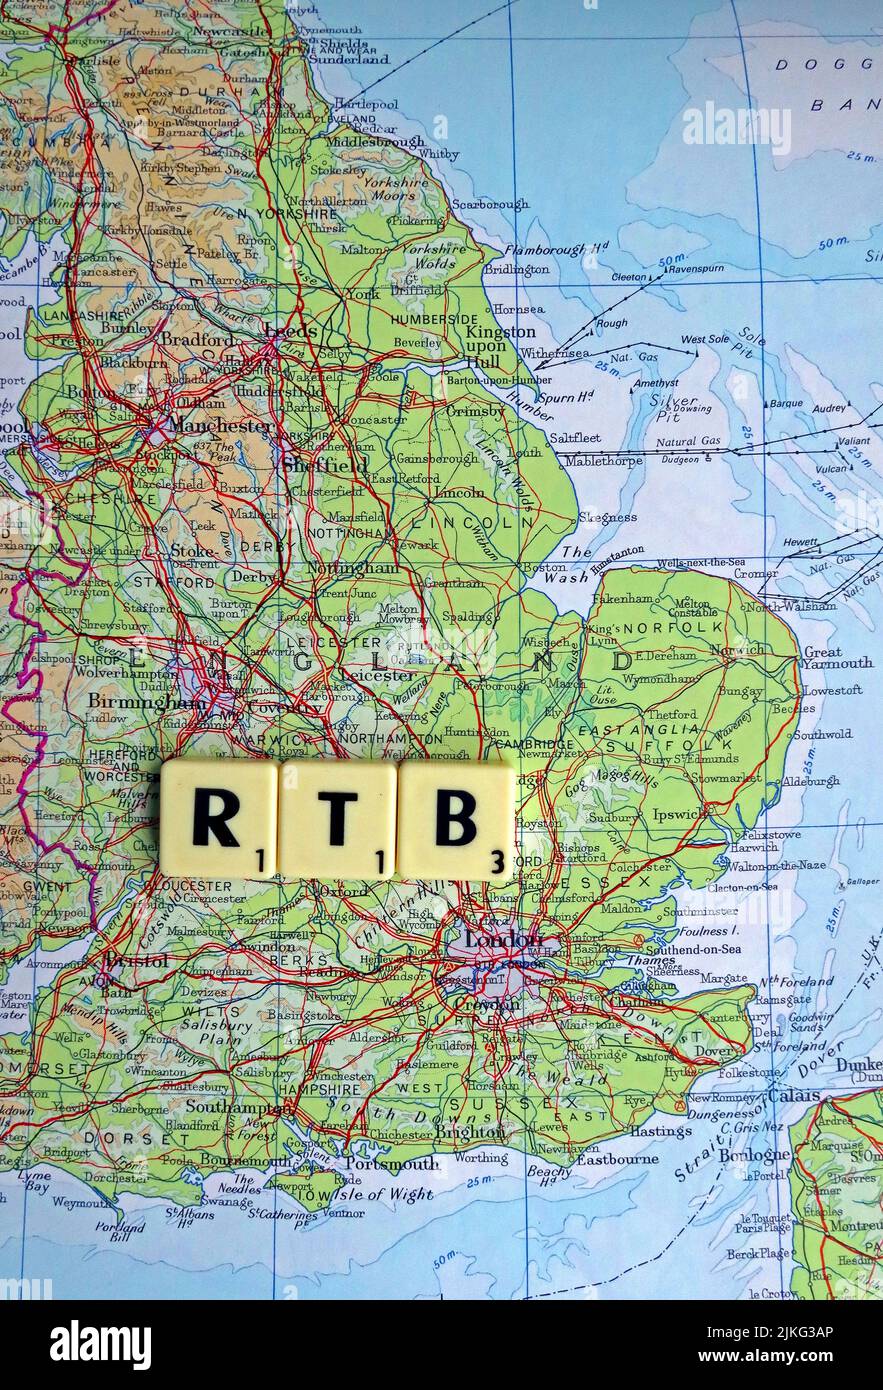 RTB, Right to Buy, écrit en lettres Scrabble sur une carte de l'Angleterre Banque D'Images